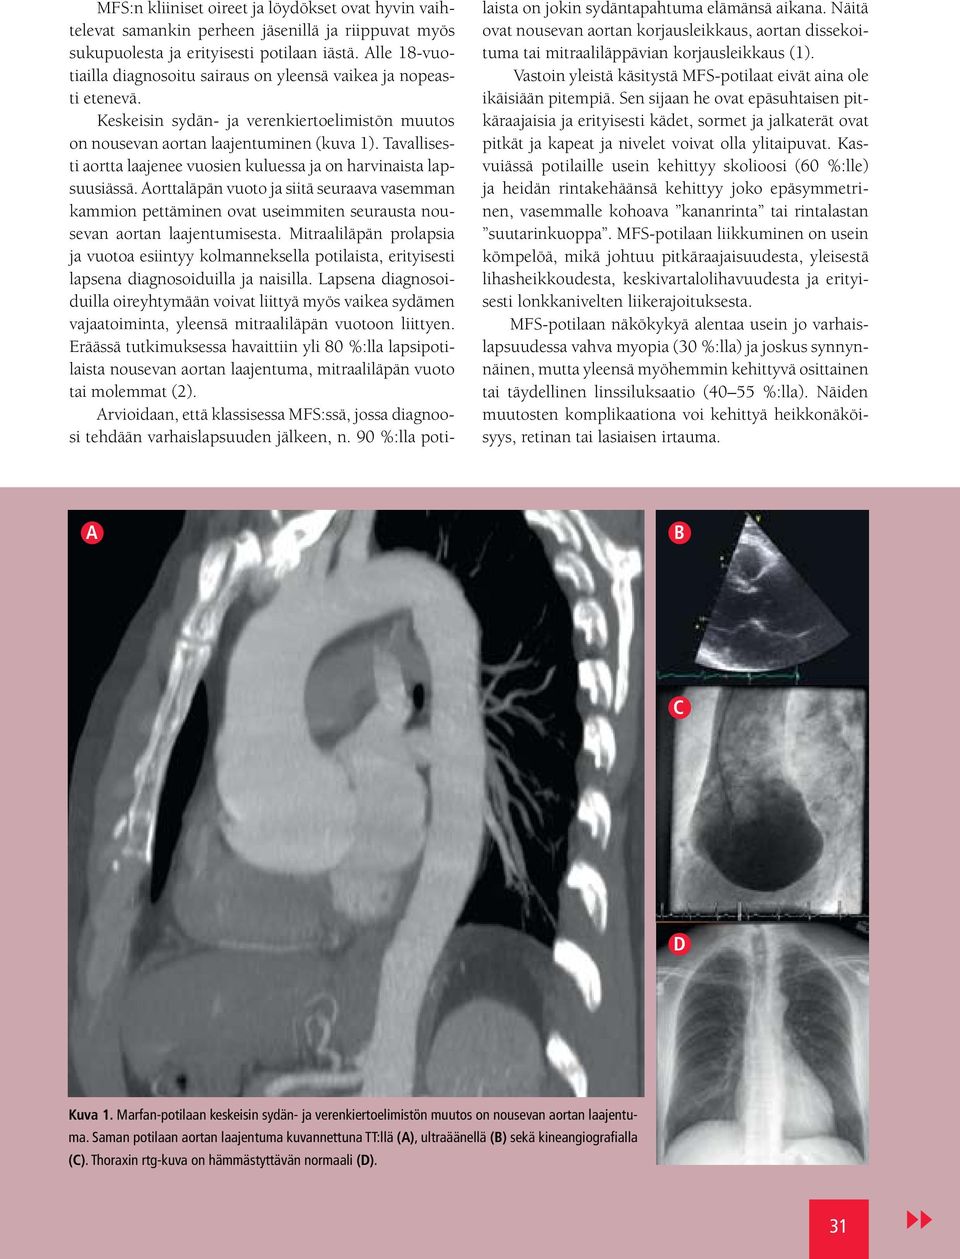 Tavallisesti aortta laajenee vuosien kuluessa ja on harvinaista lapsuusiässä. Aorttaläpän vuoto ja siitä seuraava vasemman kammion pettäminen ovat useimmiten seurausta nousevan aortan laajentumisesta.